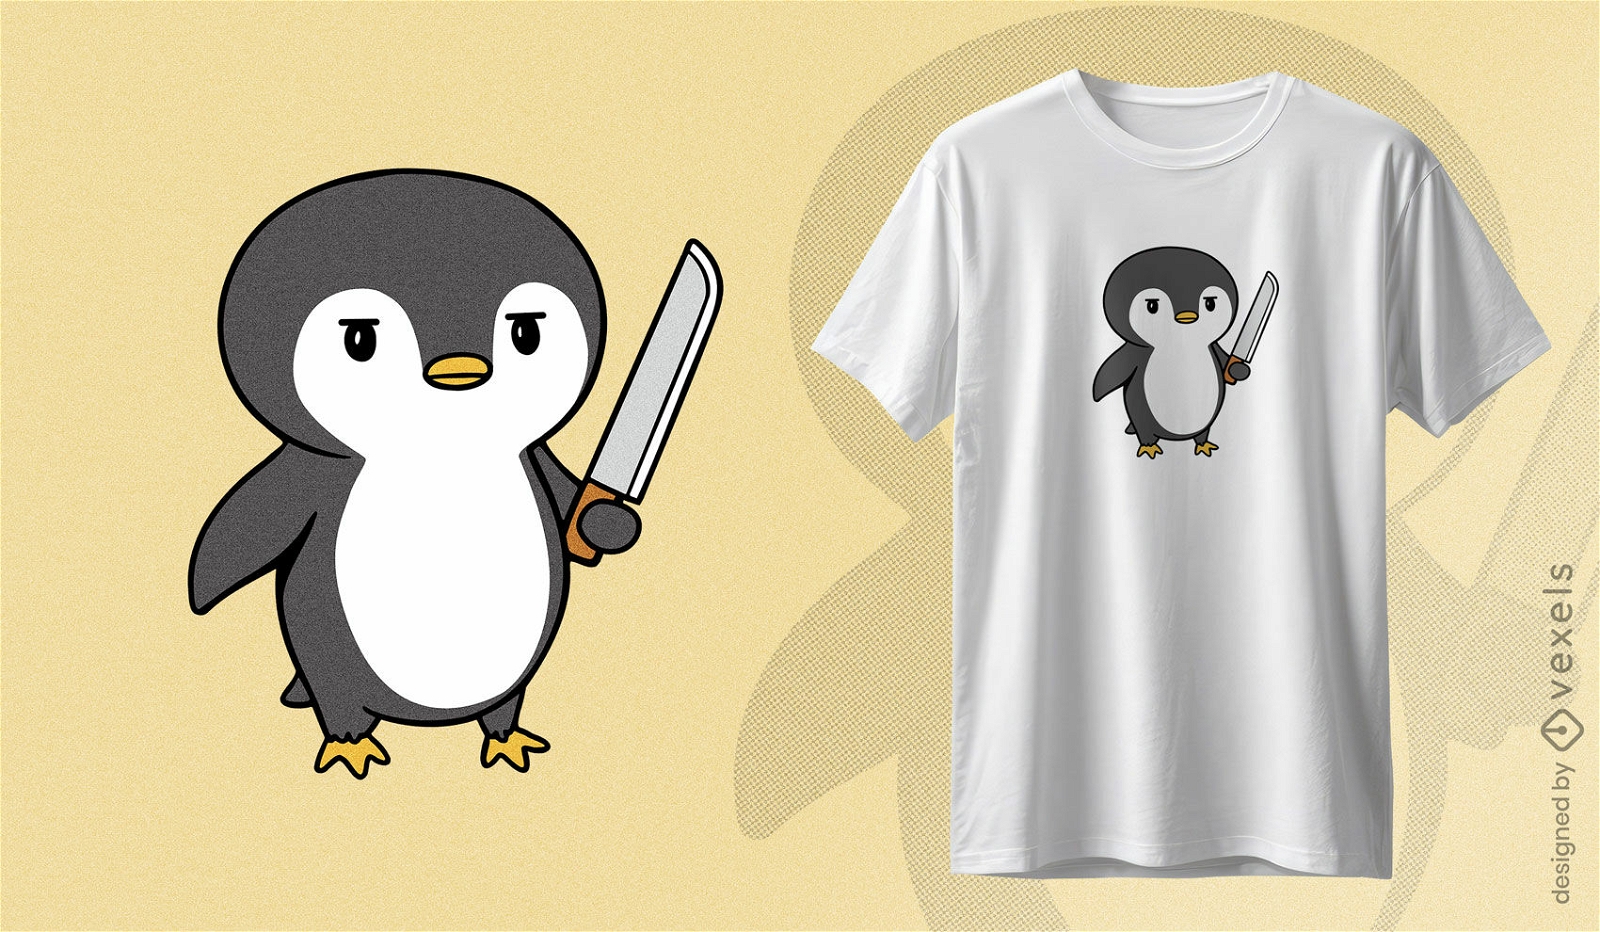 Fierce penguin t-shirt design